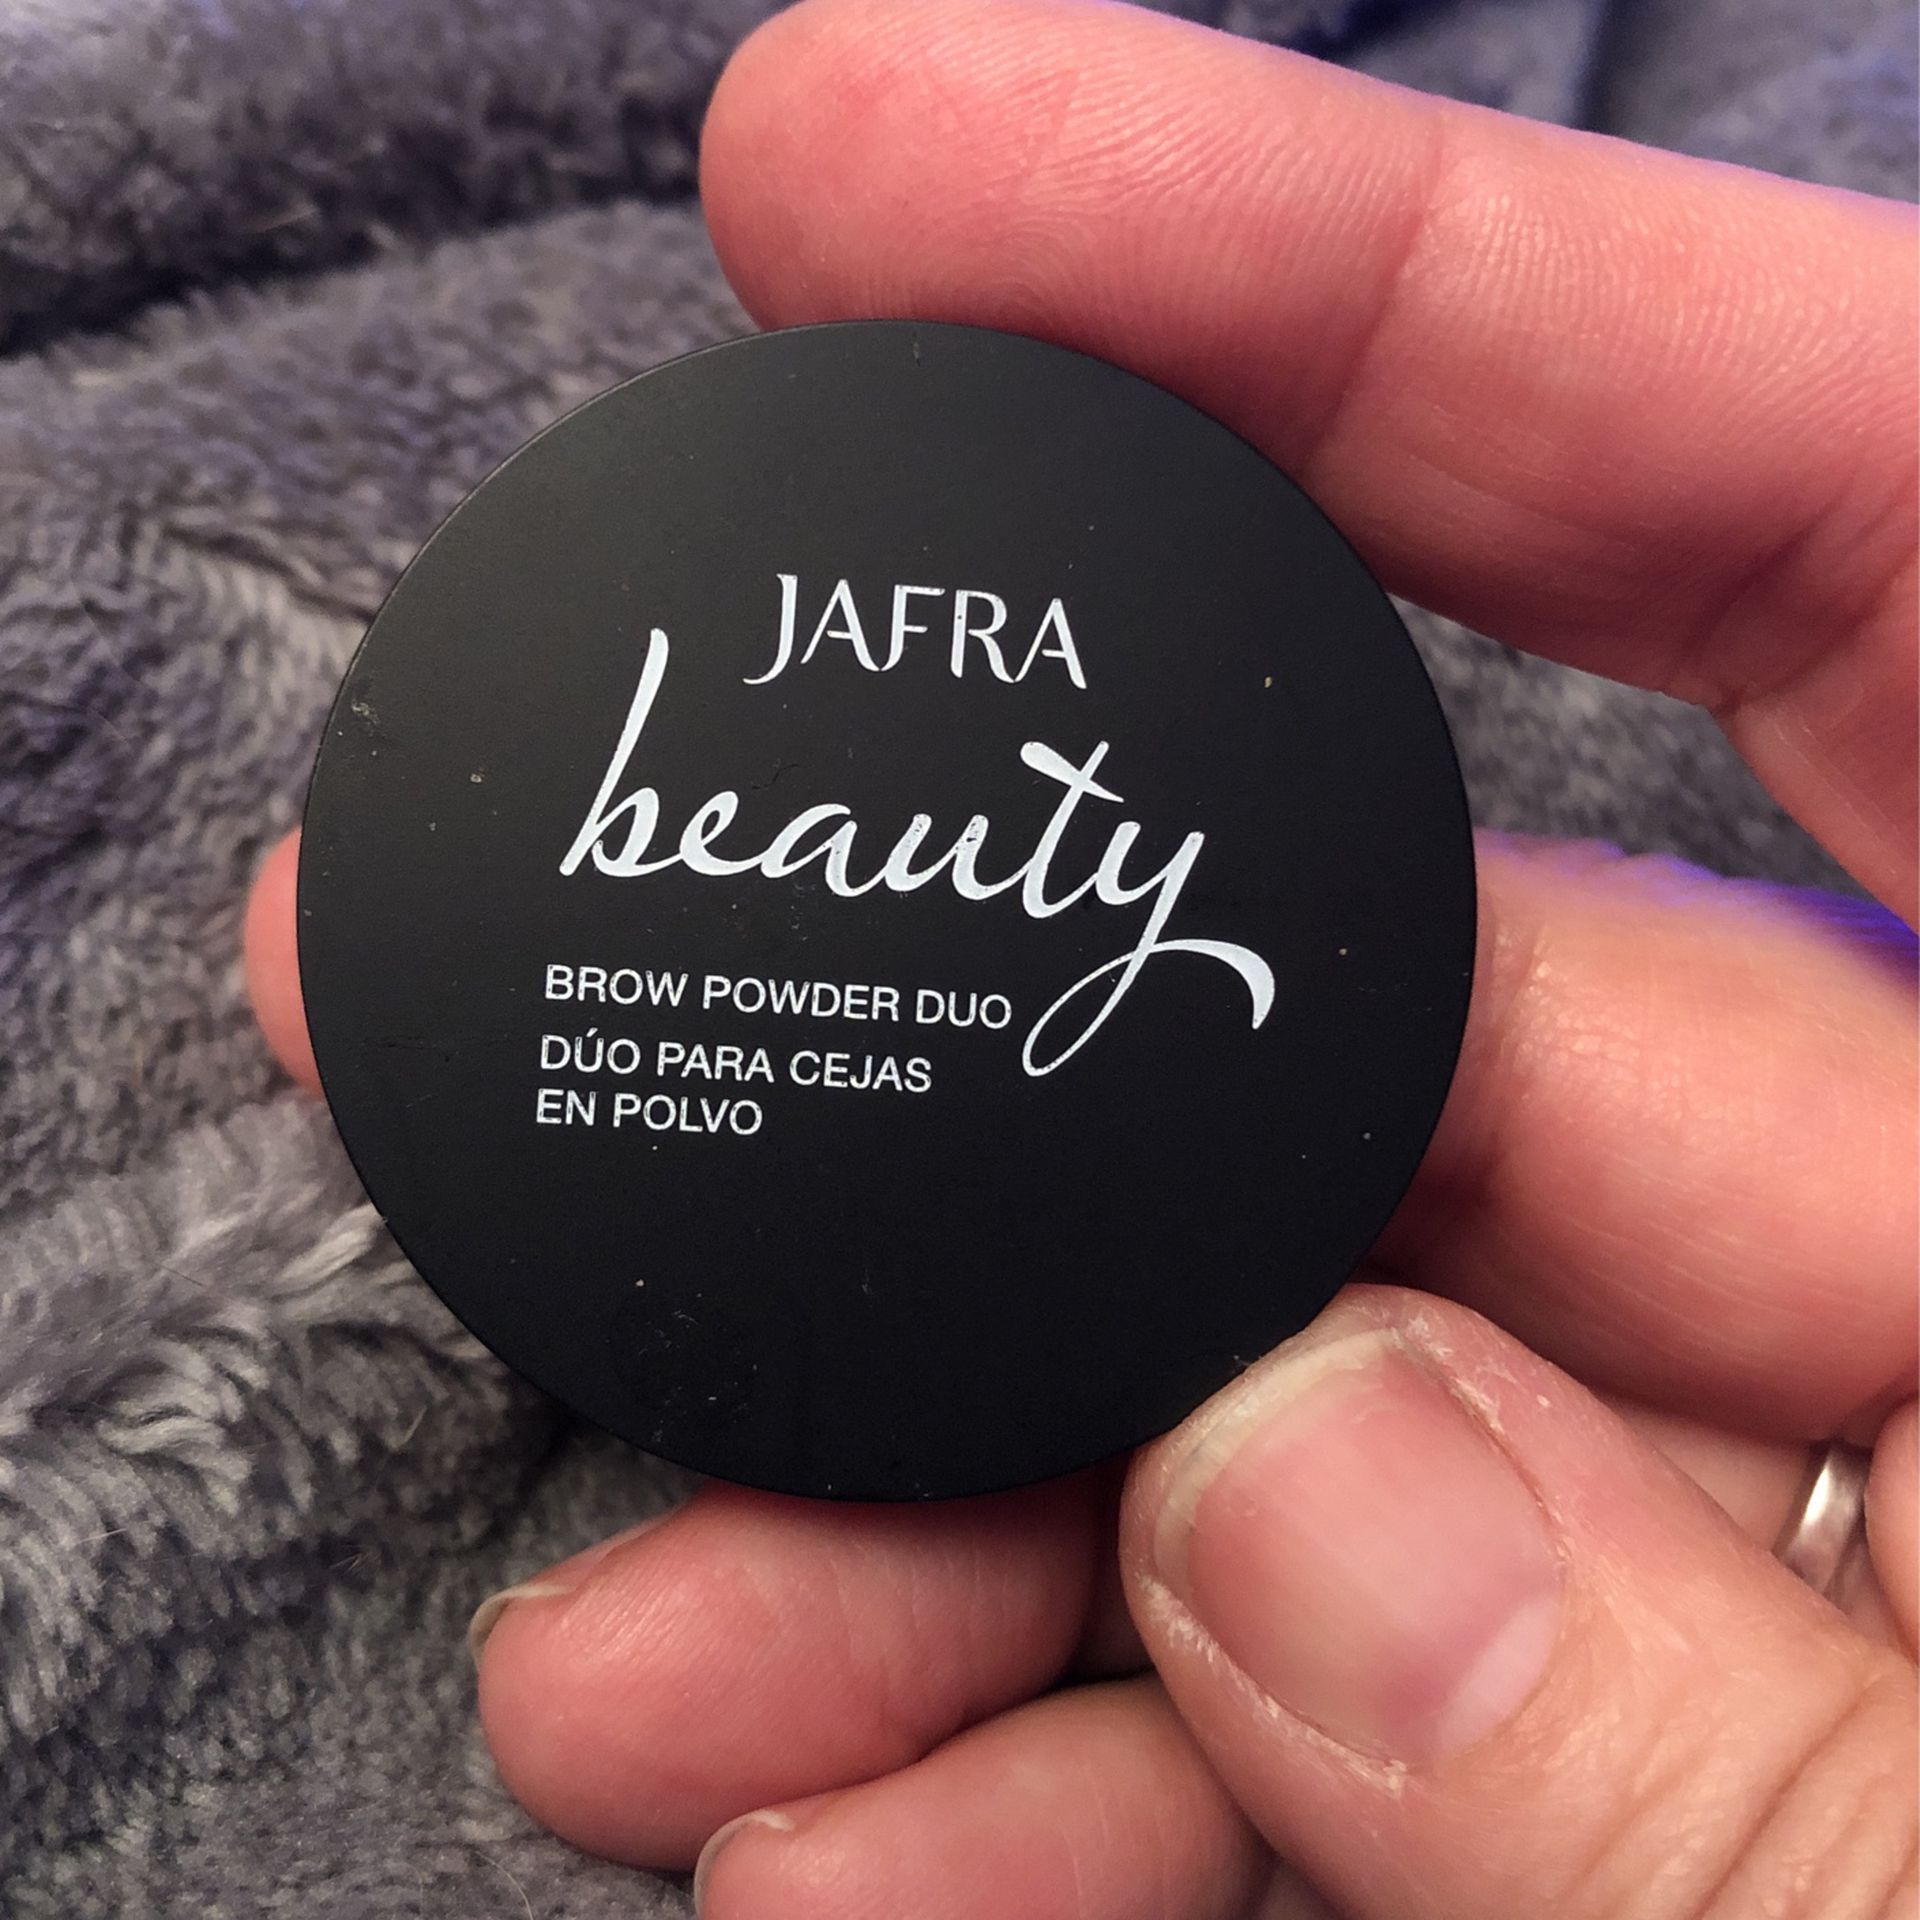 Jafra beauty, brow powder duo, warm brunette